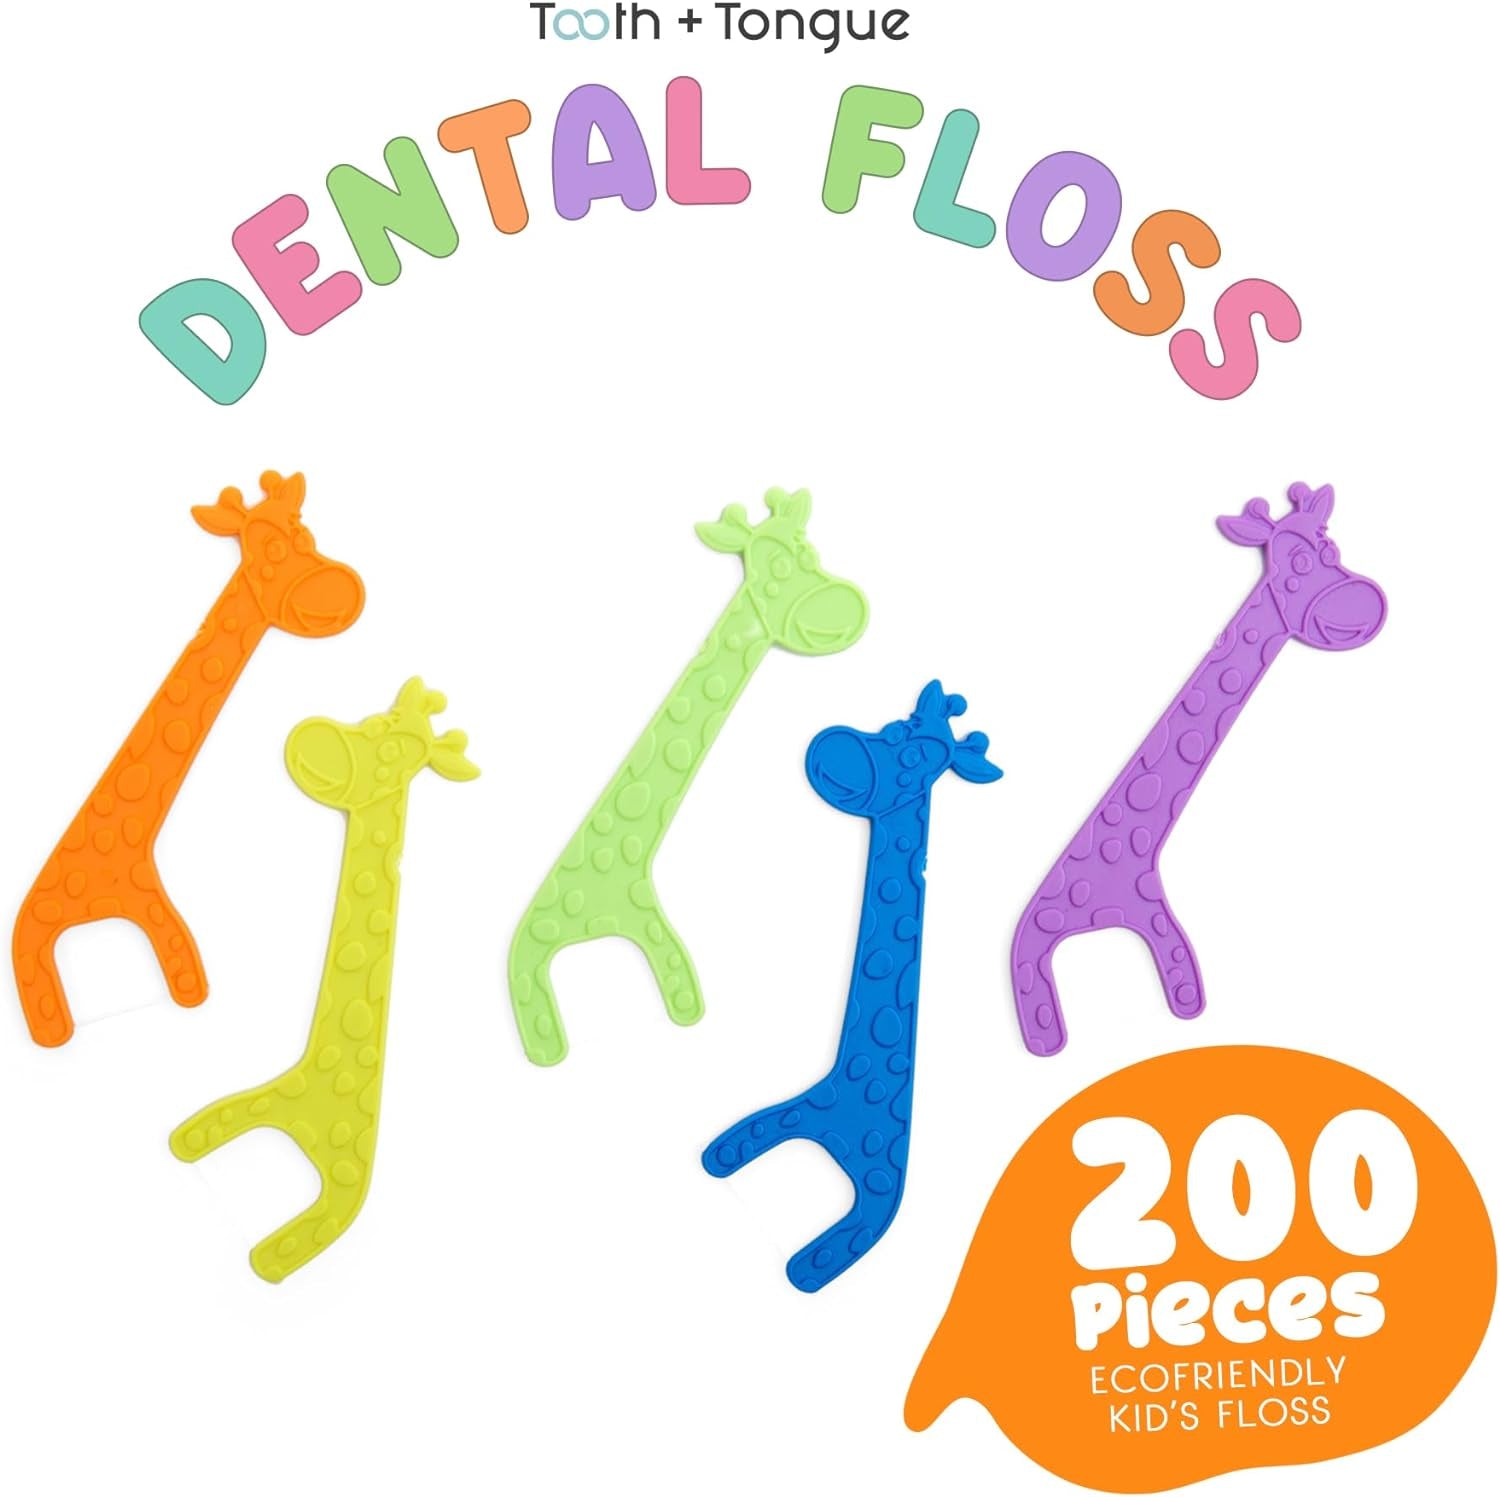 Dental Floss for Children